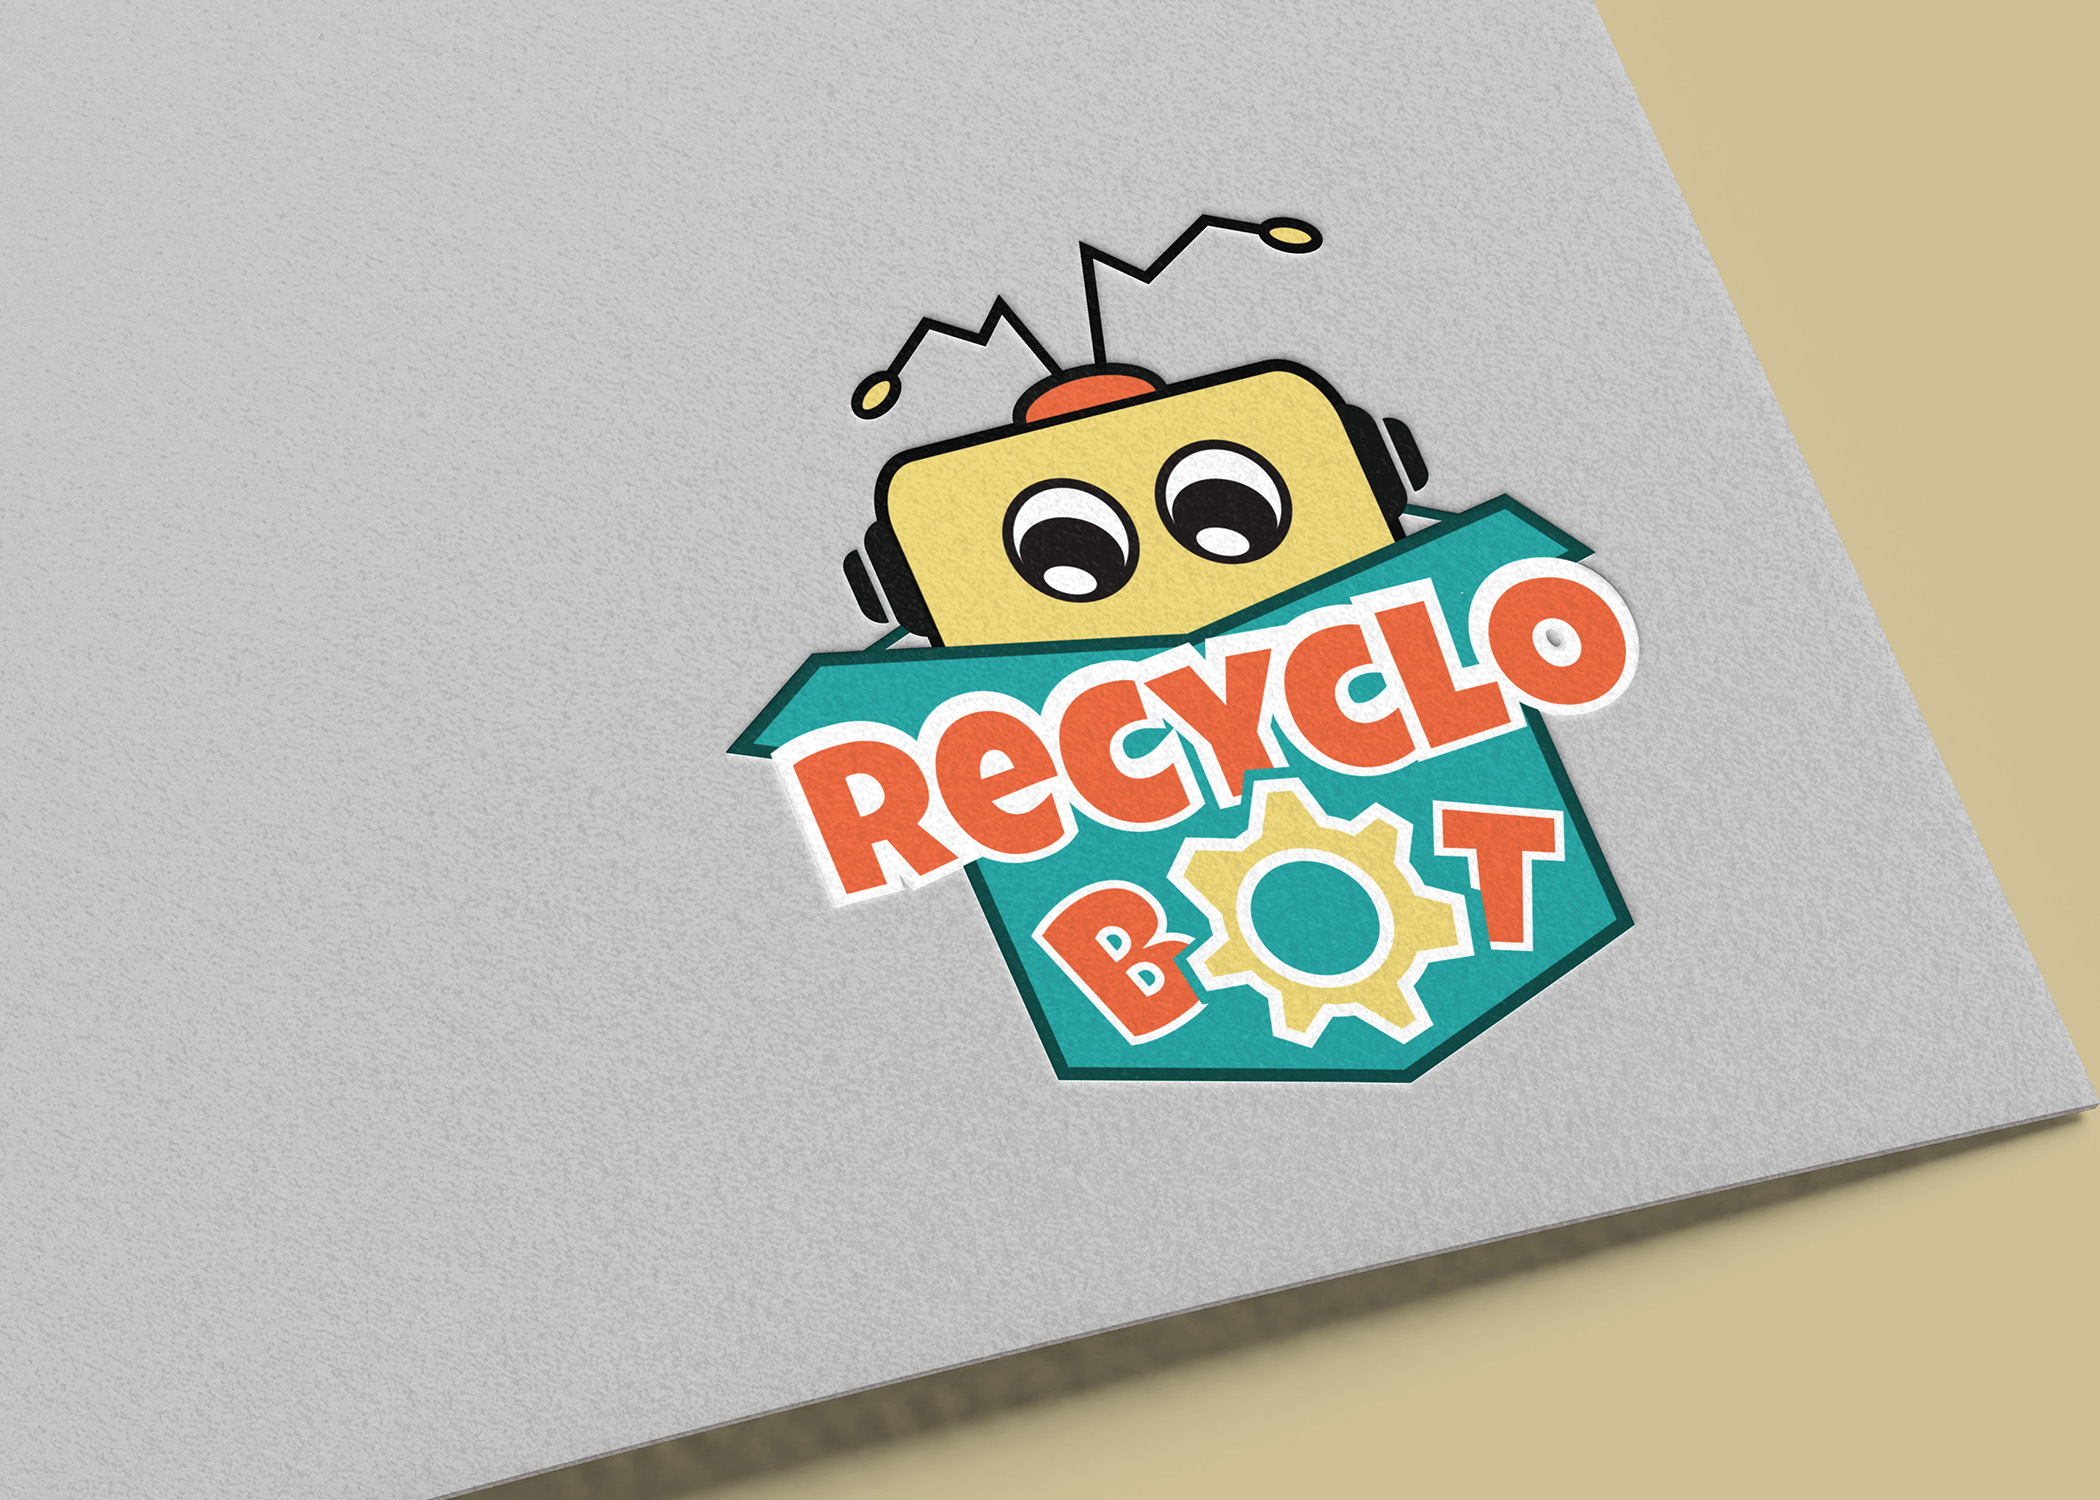 recyclobot logo